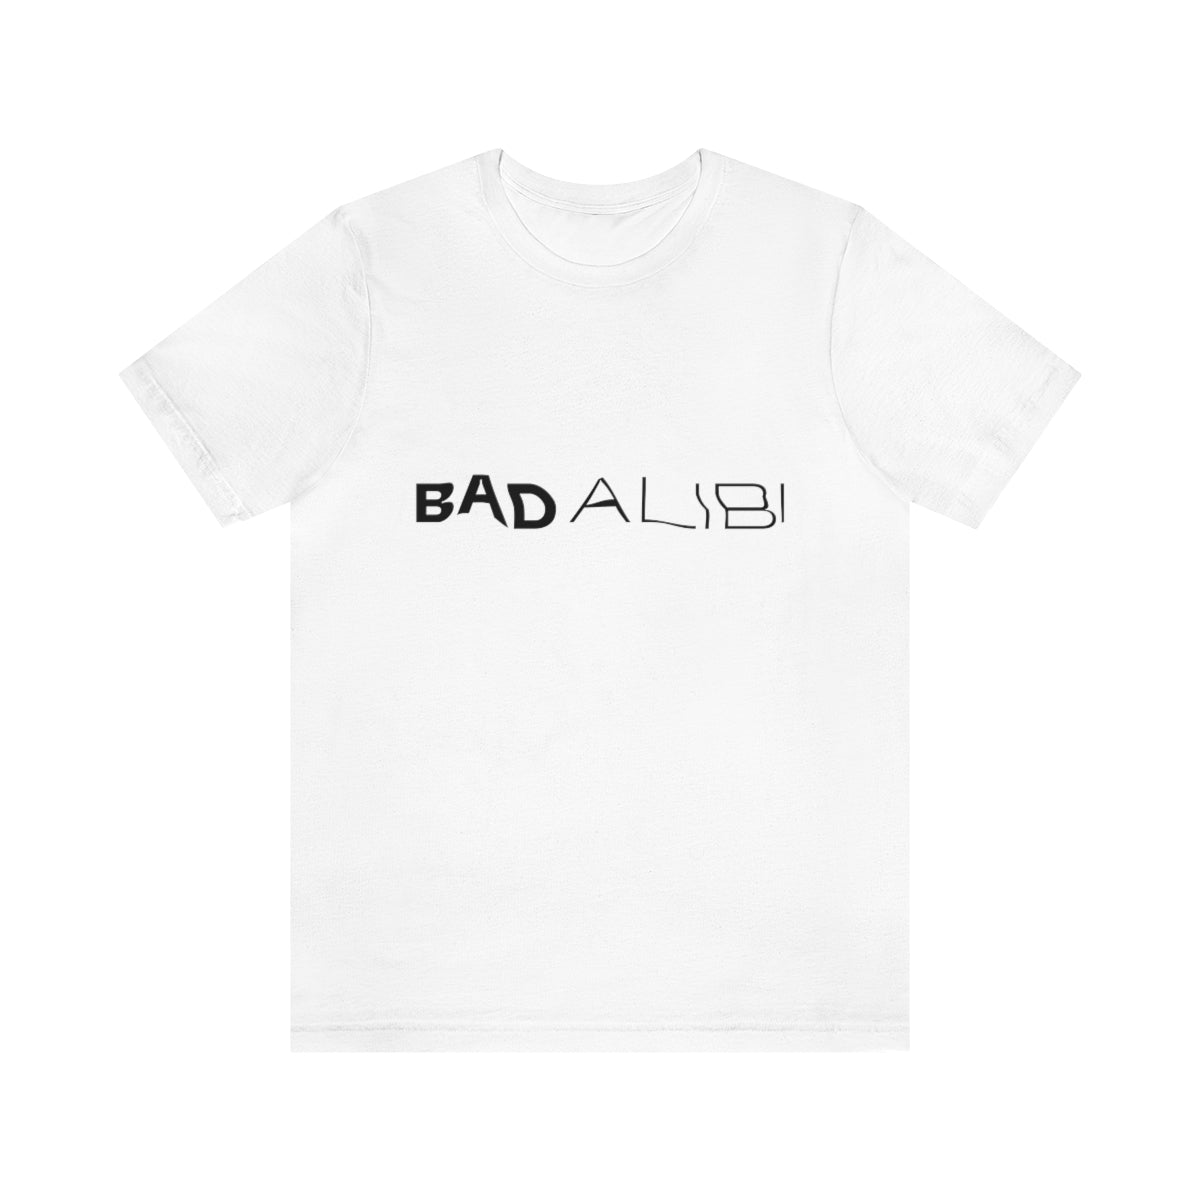 Bad Alibi T-Shirt